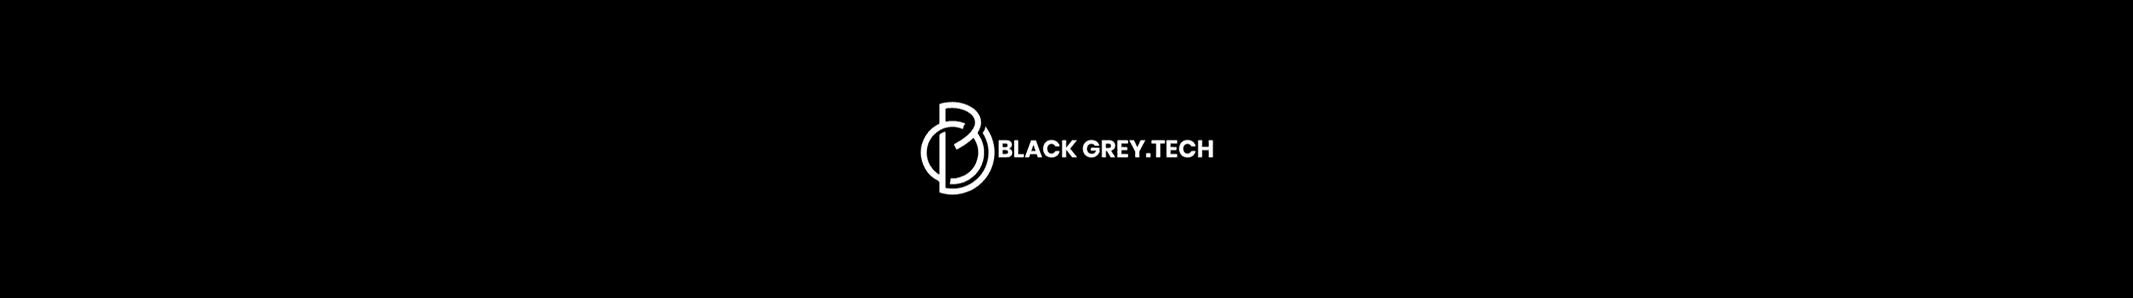 BlackGrey.tech LLC's profile banner